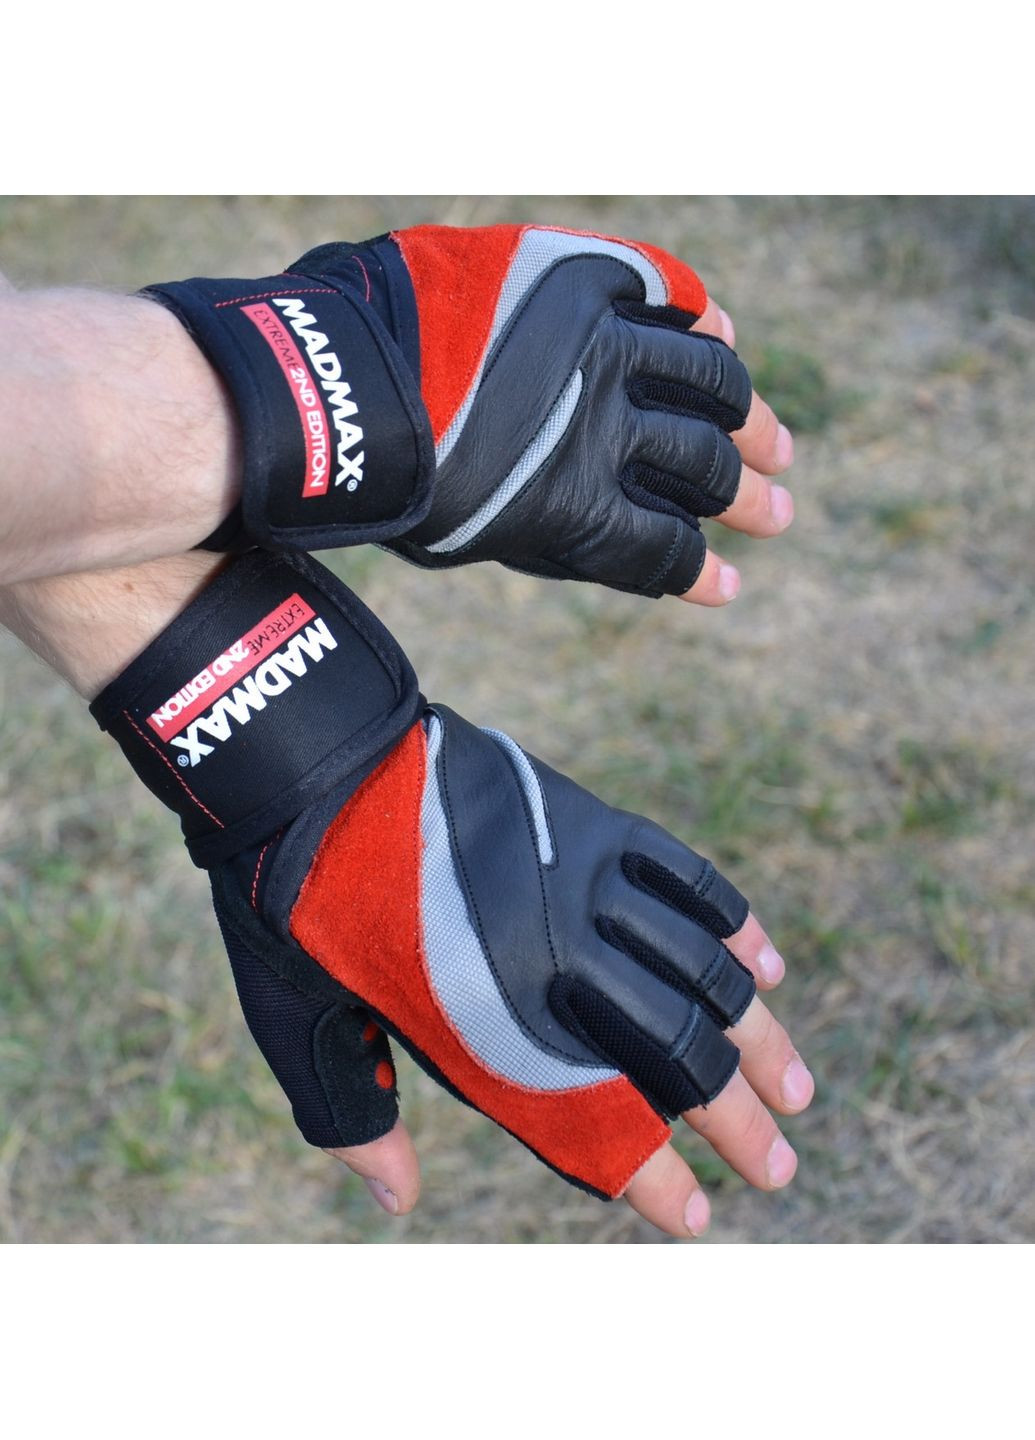 Унисекс перчатки для фитнеса L Mad Max (279321250)